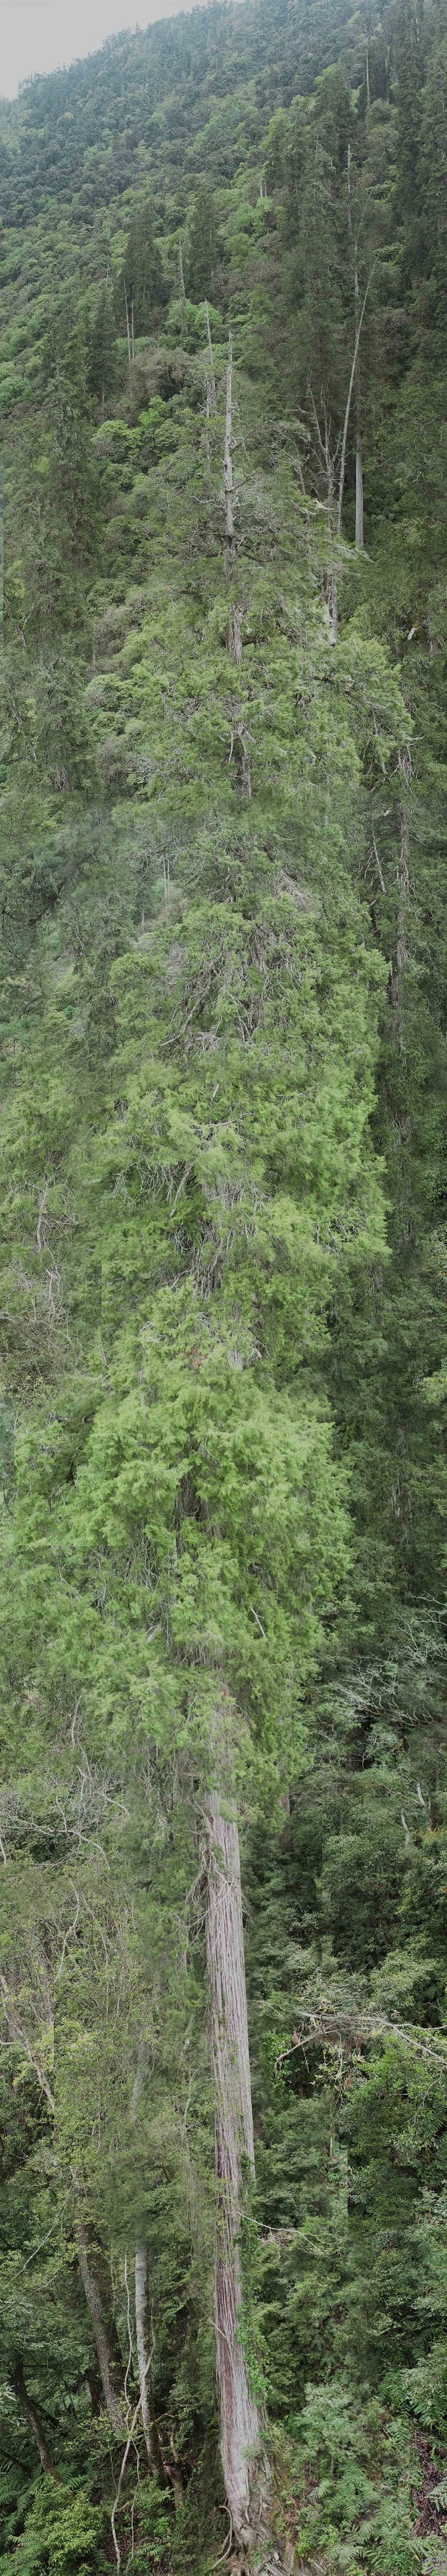 Phát hiện cây khổng lồ bằng tòa cao ốc, mọc ở hẻm núi sâu nhất thế giới - 1